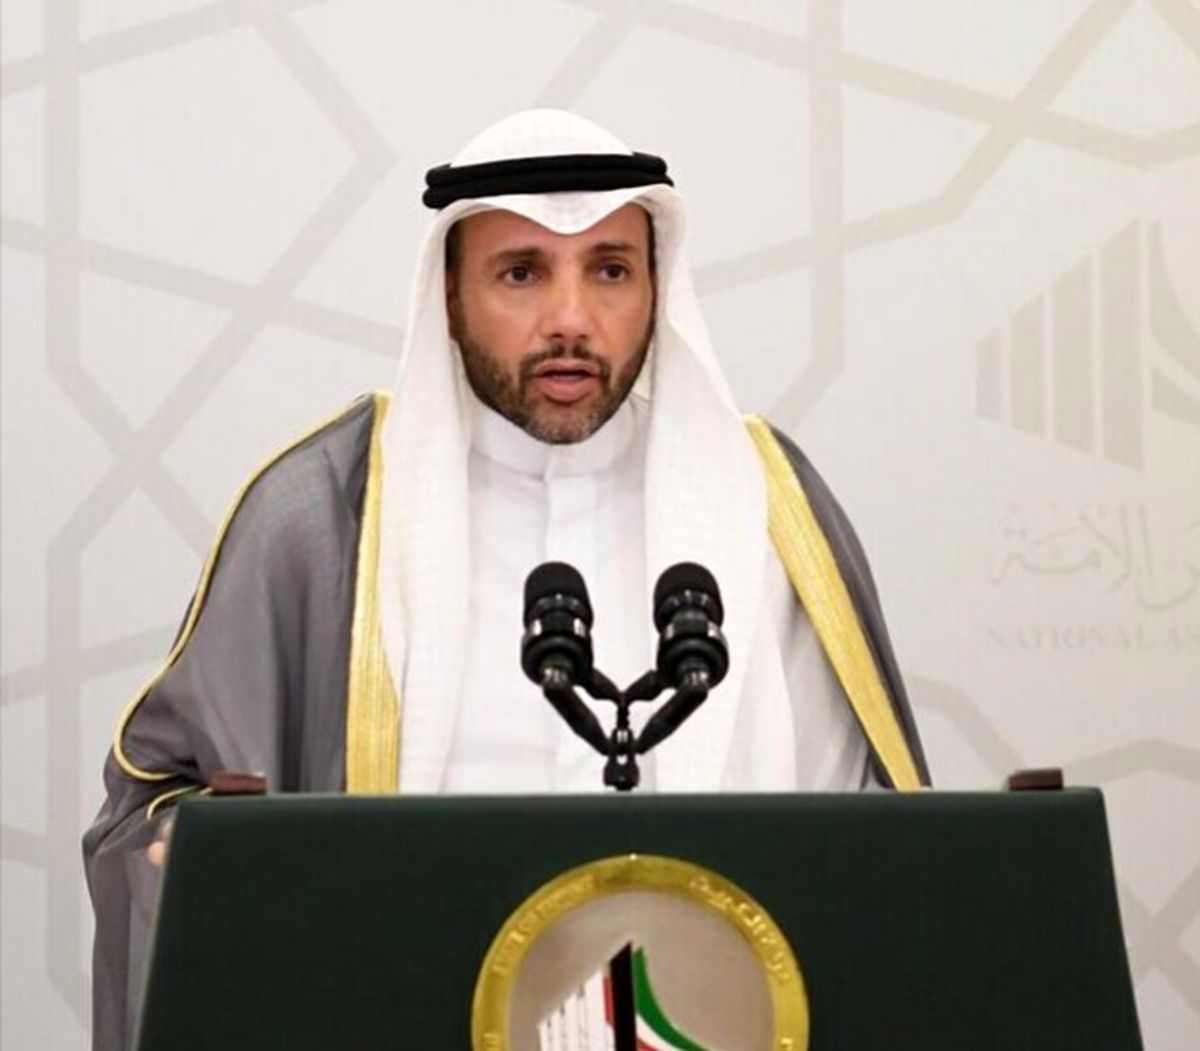 فرمان امیر کویت برای عفو محکومان سیاسی